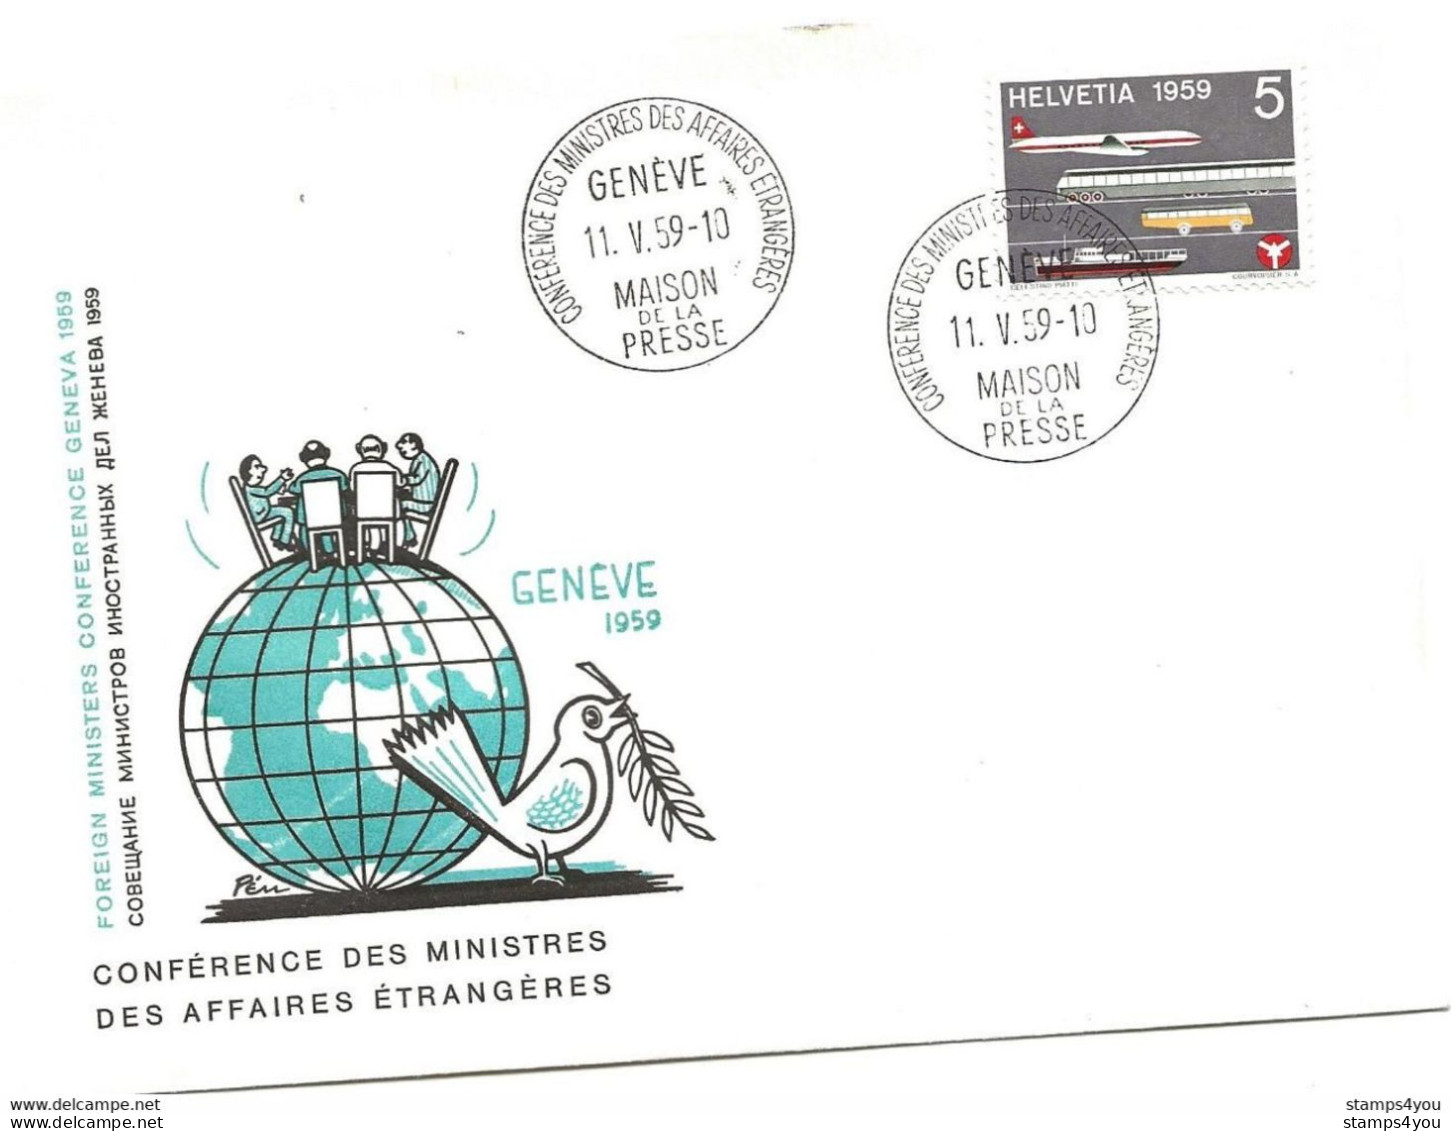 125 - 35 - Enveloppe "PEN" Avec Oblit Spéciale Genève Maison Presse - Conférence Ministres Affaires étrangères 1959 - Marcofilie